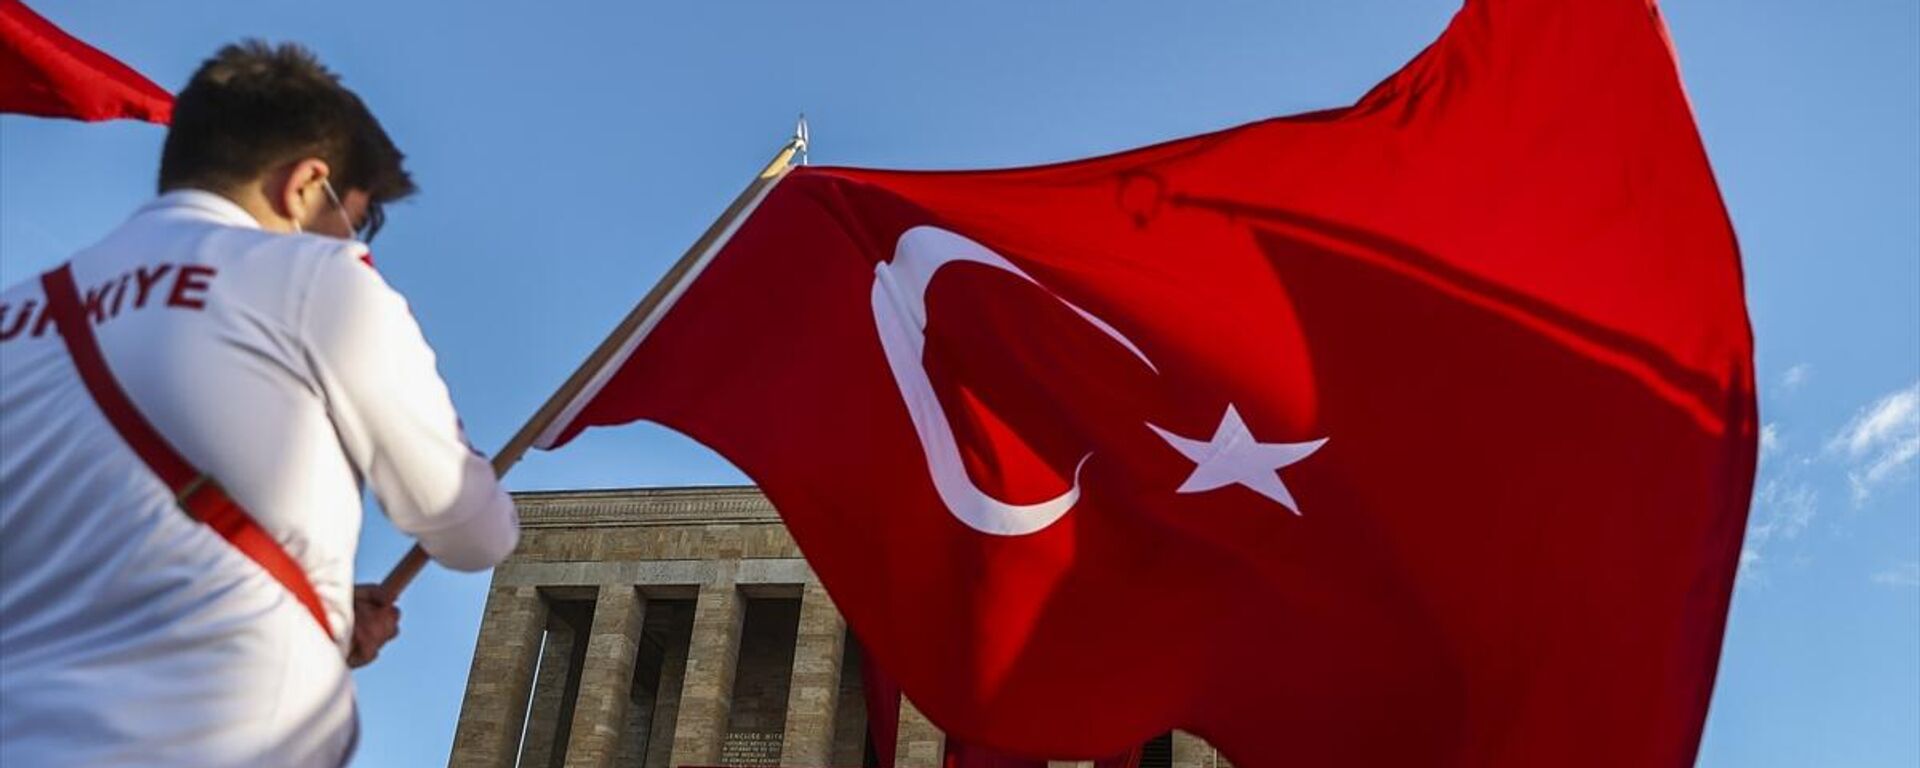  Atatürk, ebediyete intikalinin 83. yılında Anıtkabir'de düzenlenen devlet töreniyle anıldı. - Sputnik Türkiye, 1920, 10.11.2021